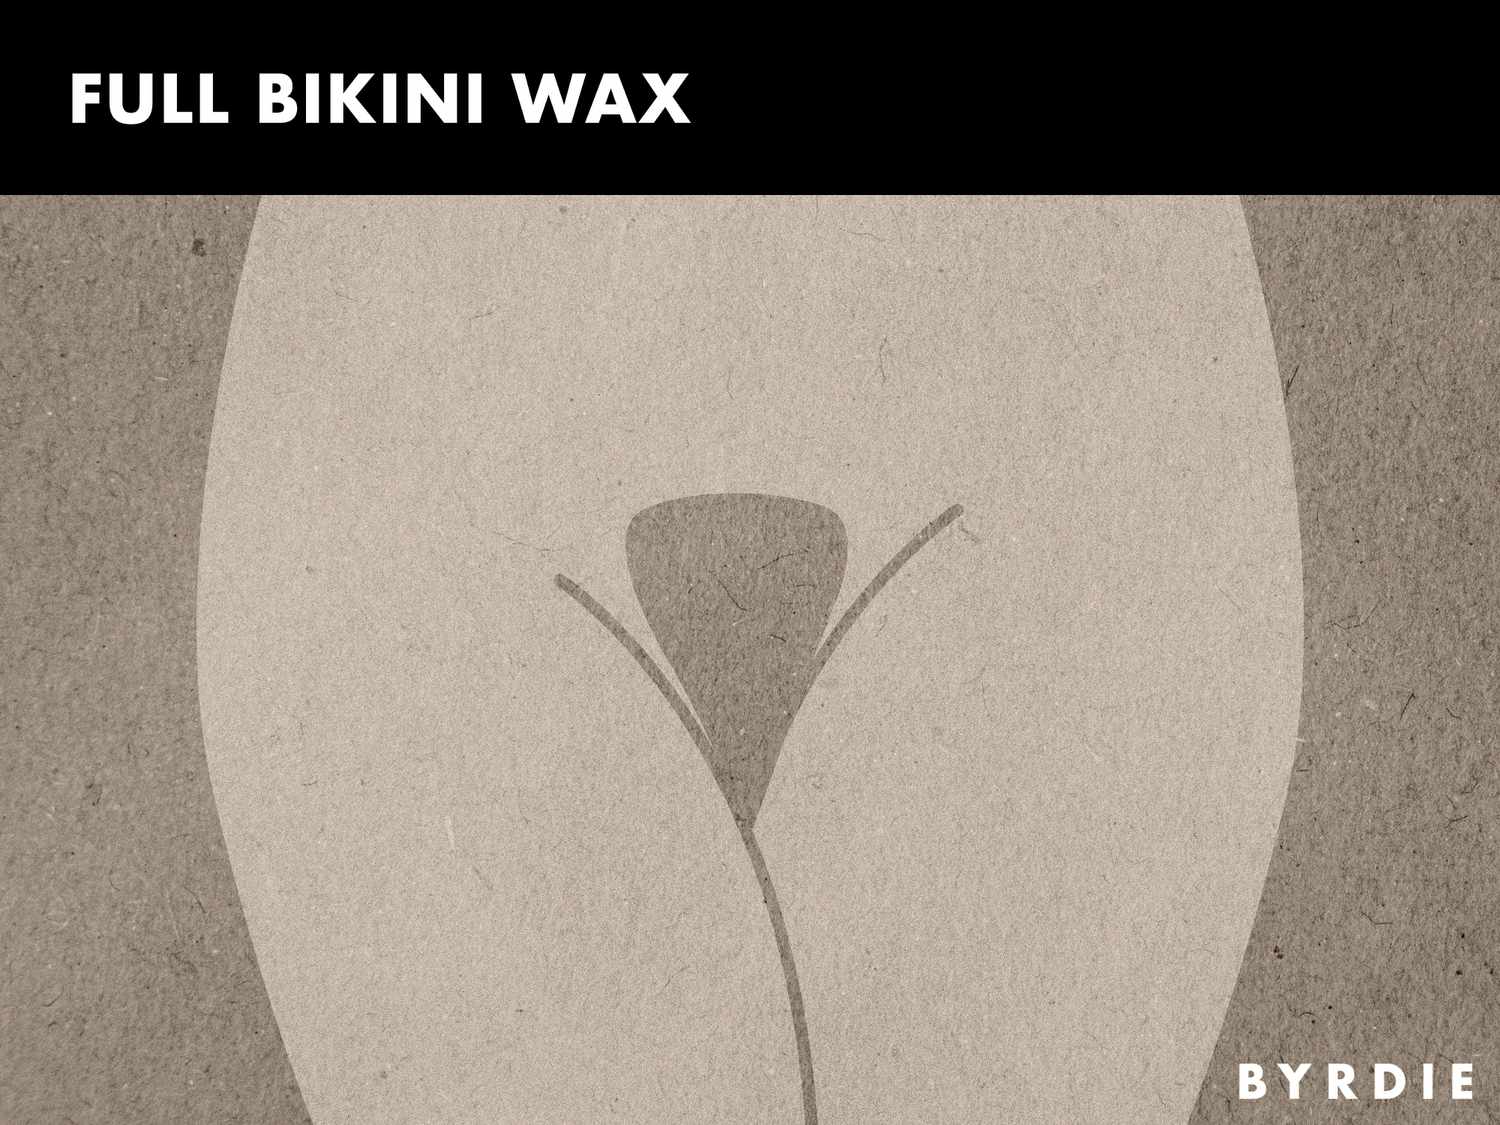 bethany hollar recommends Bikini Wax Style Photos